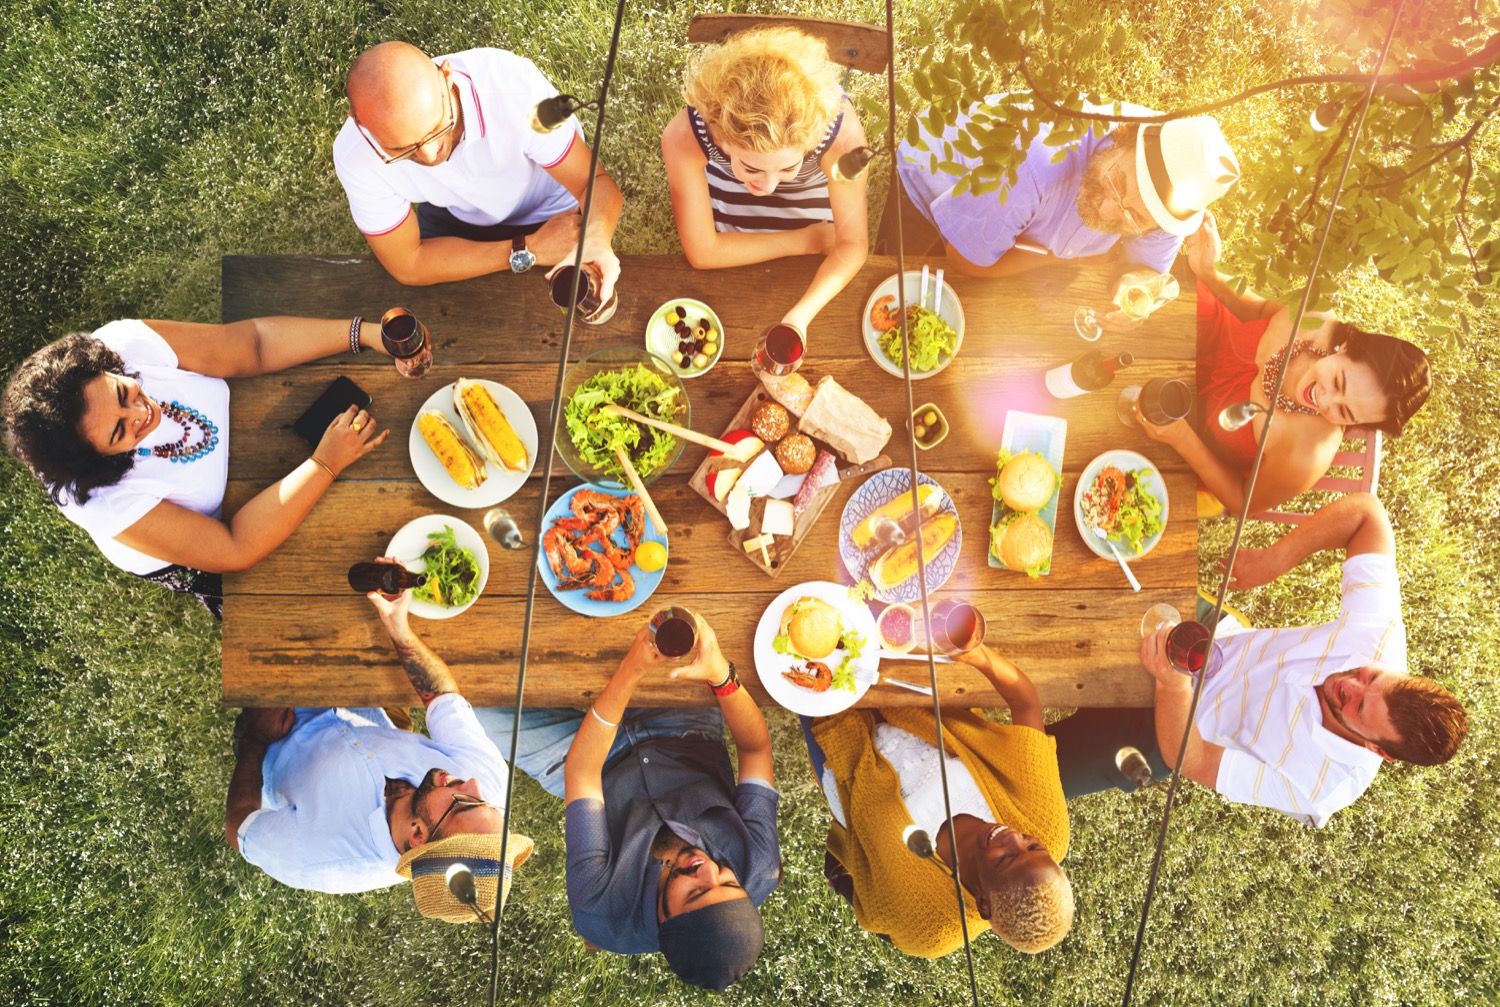 Une vue aérienne d'un groupe d'adultes partageant un gros repas sur une terrasse chauffée au propane.